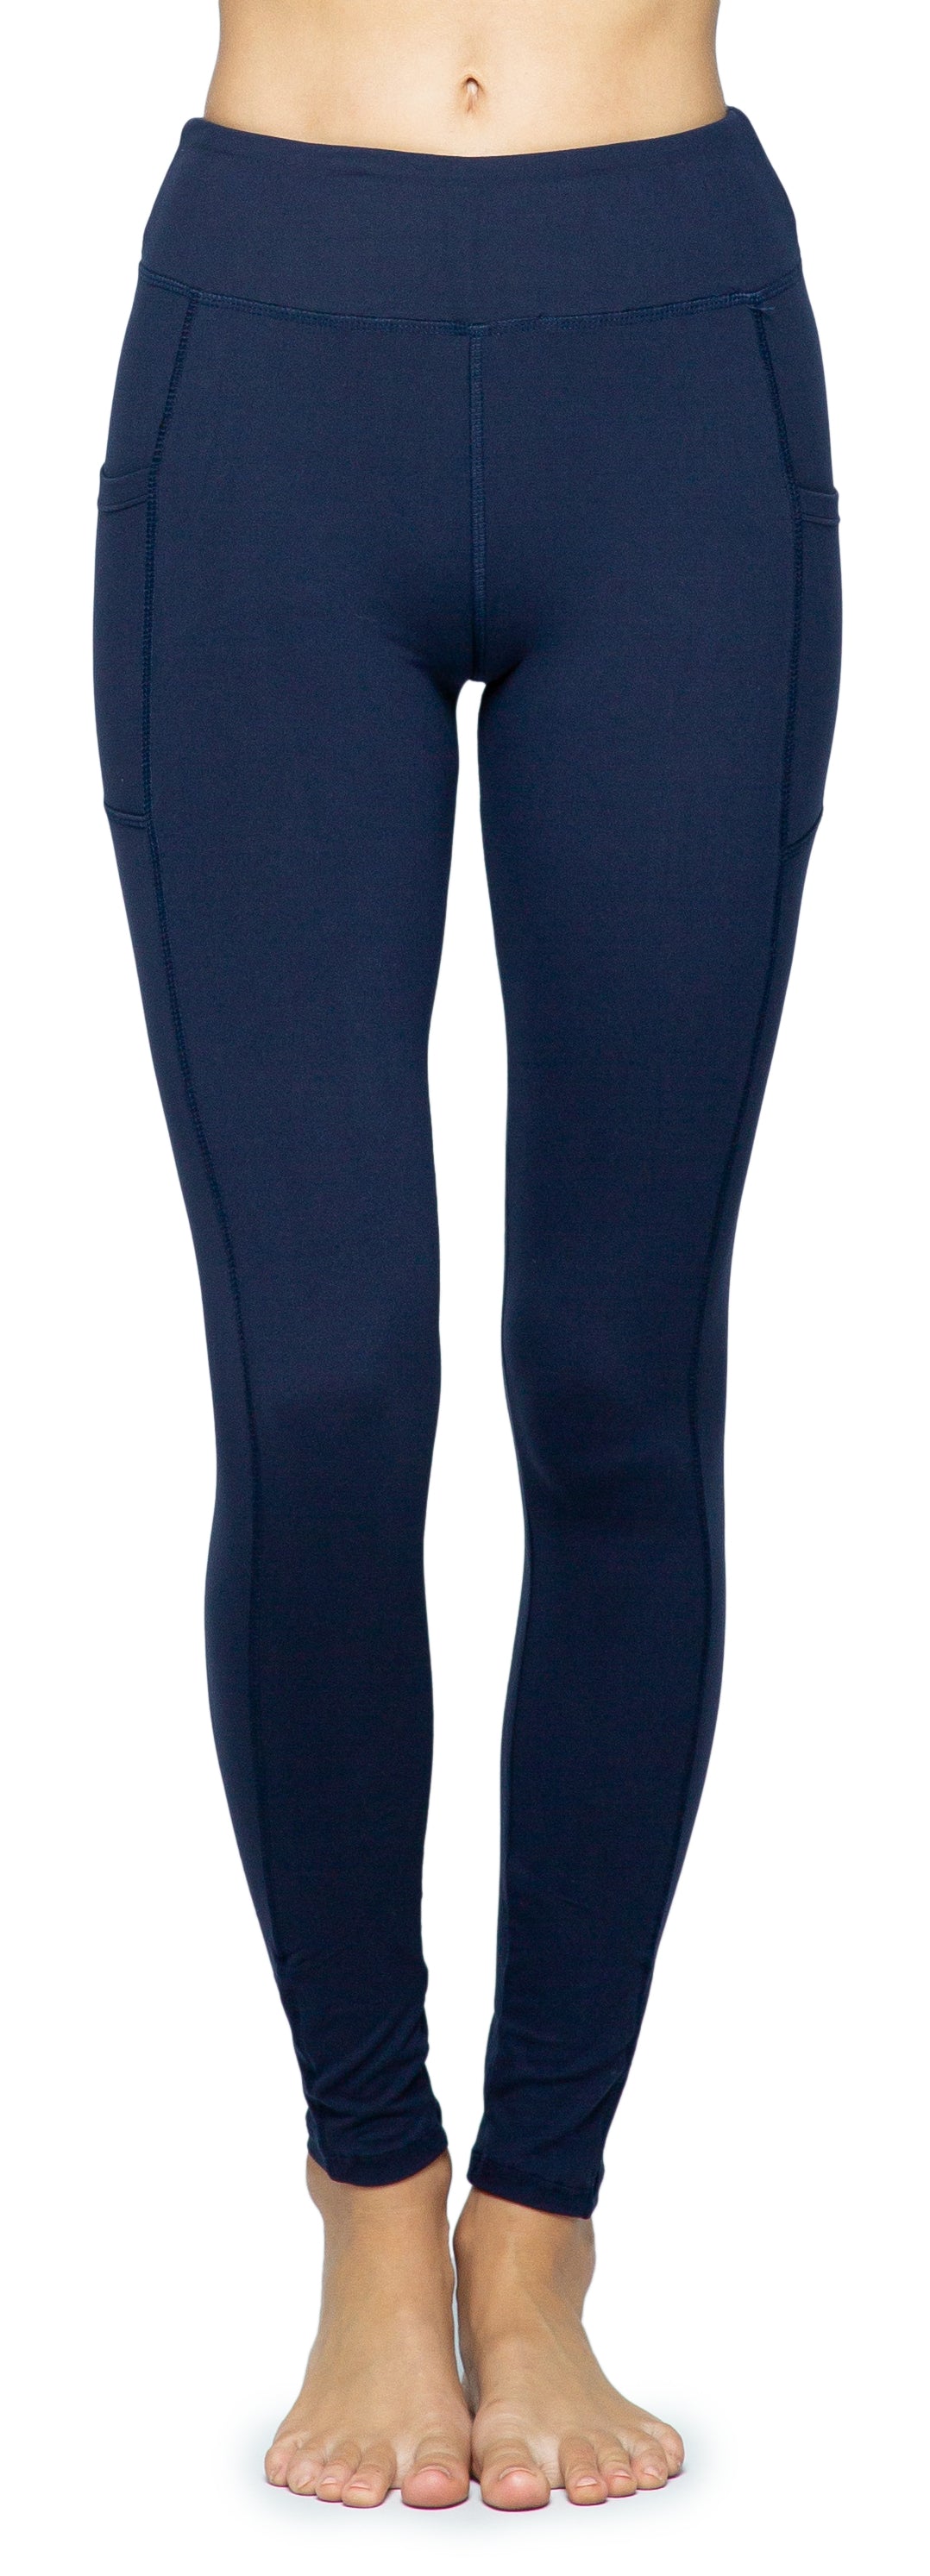 BSP Women's Full Length Legging With Pockets - Yahoo Shopping